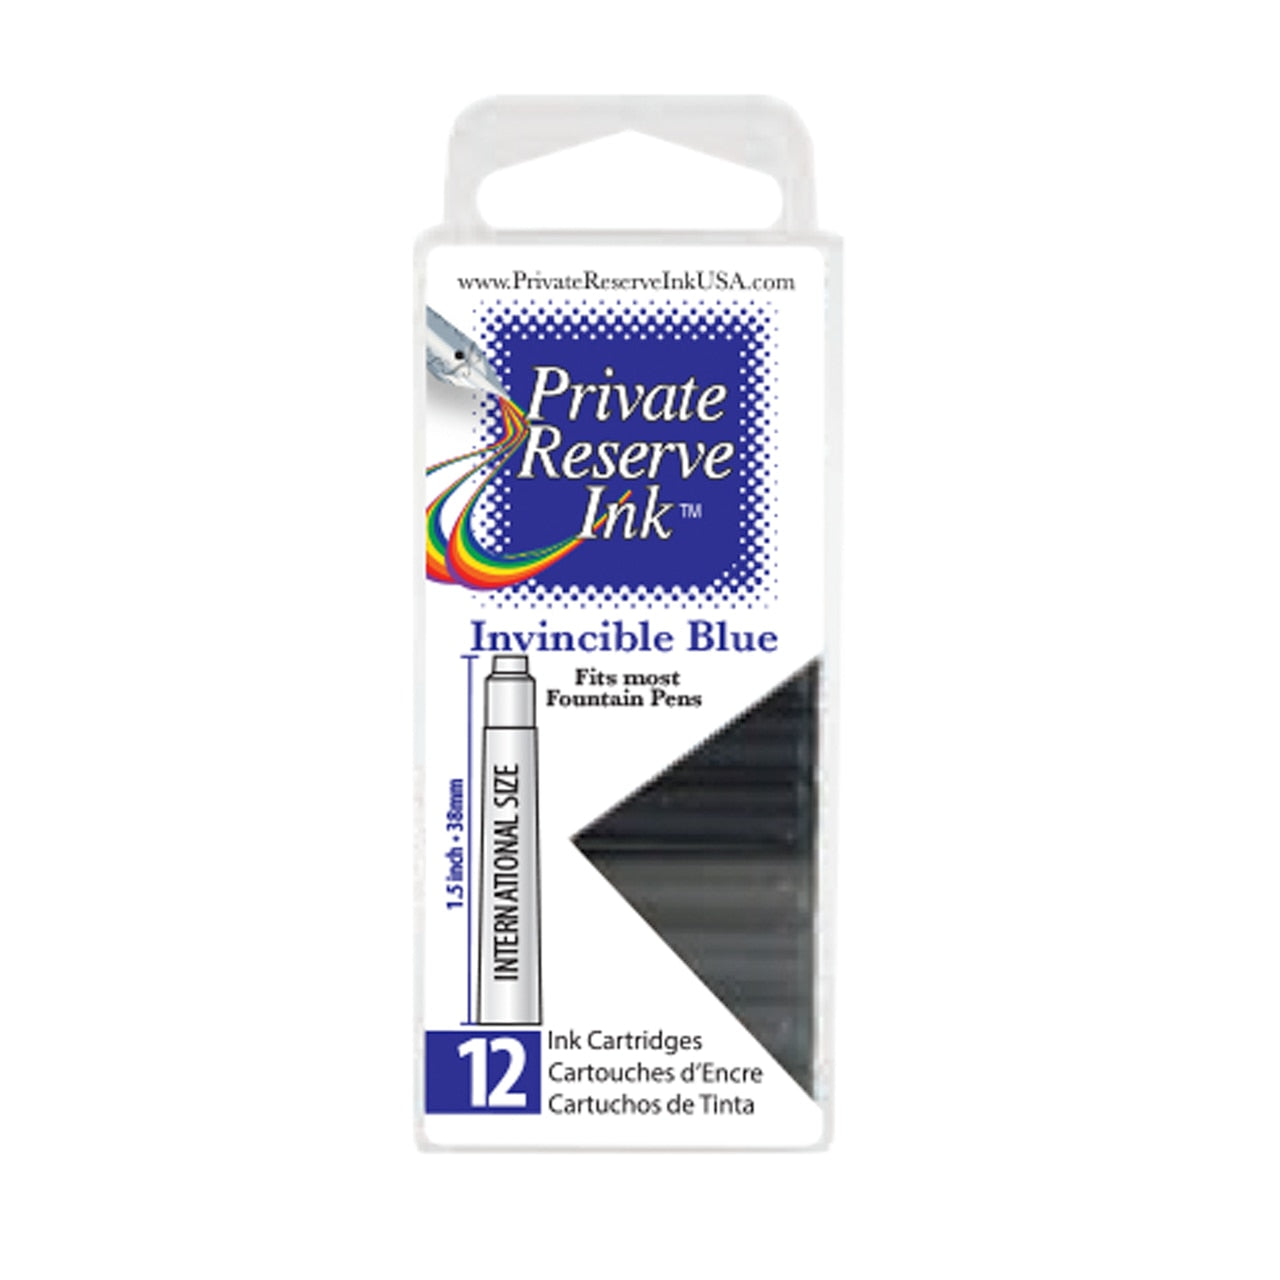 Private Reserve Invincible Blue